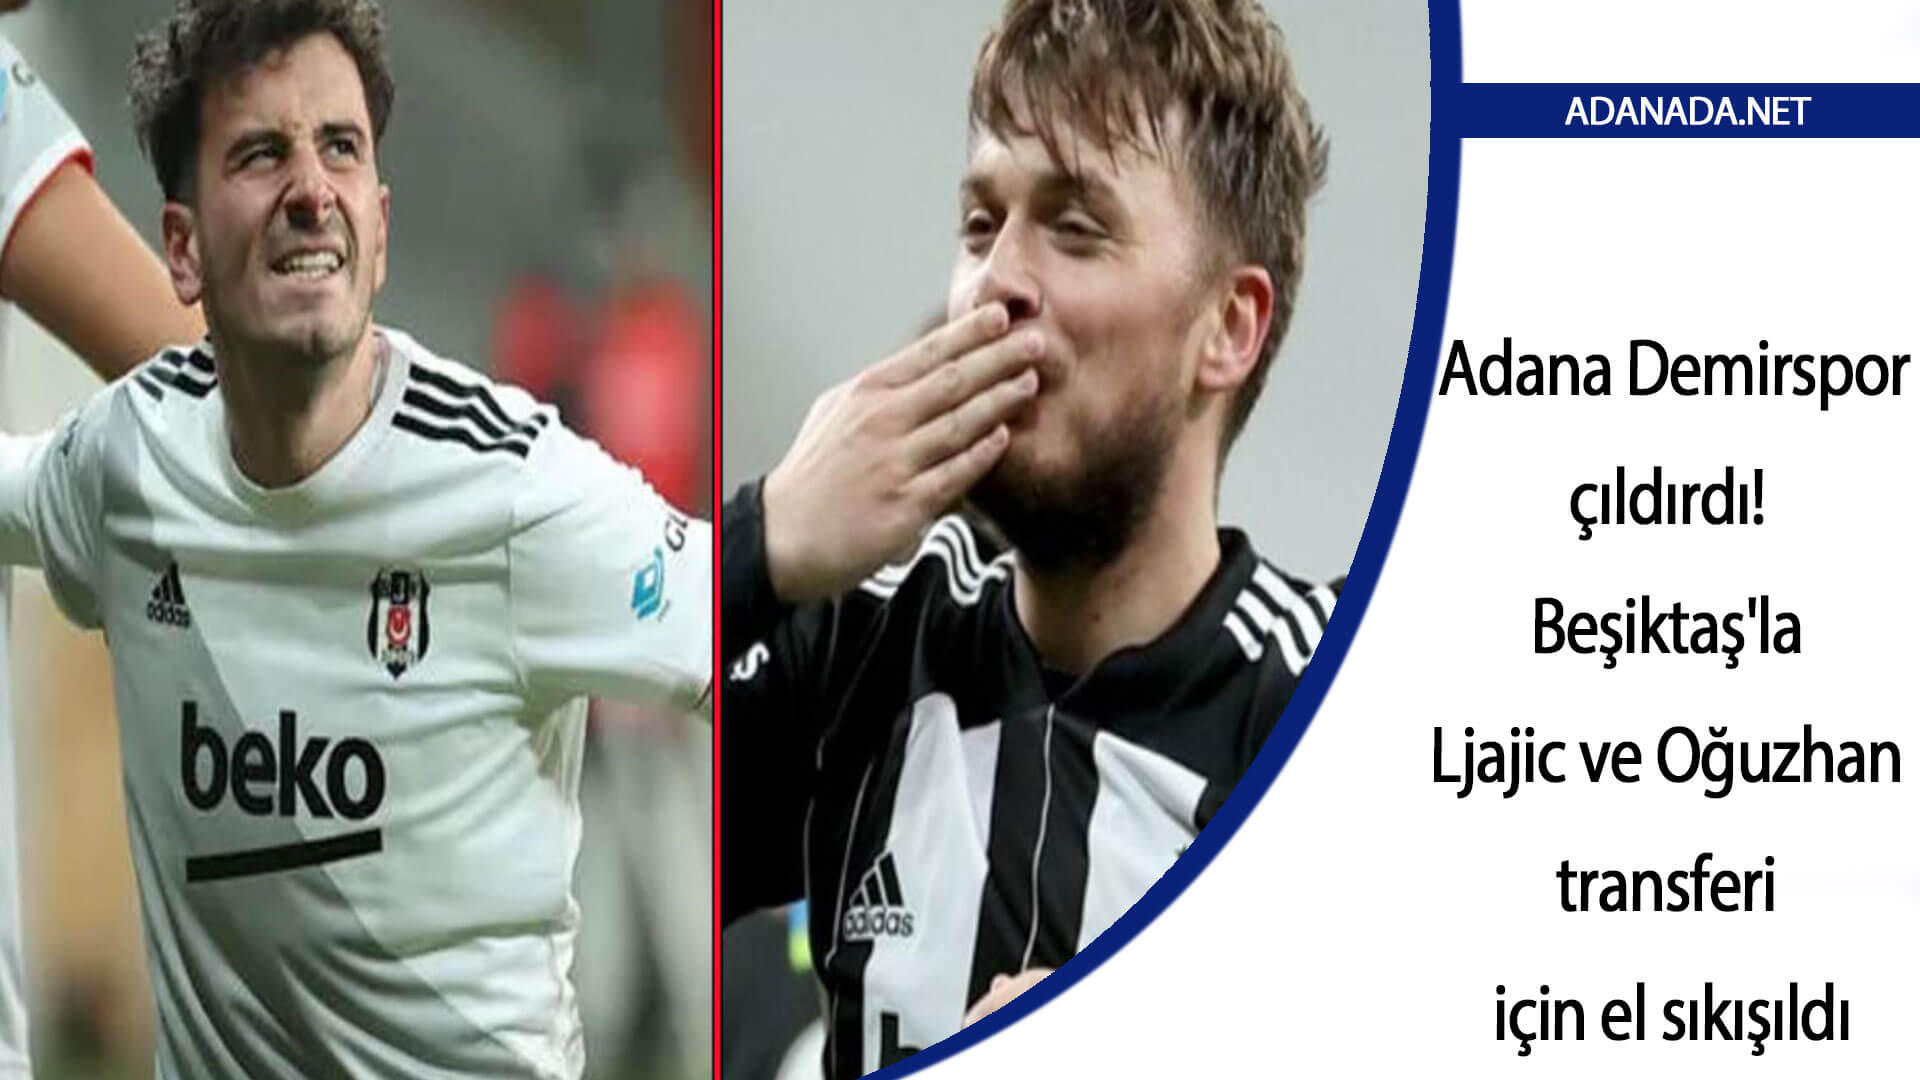 Adana Demir çıldırdı! Beşiktaş’la Adem Ljajic ve Oğuzhan’ın transferi için el sıkışıldı